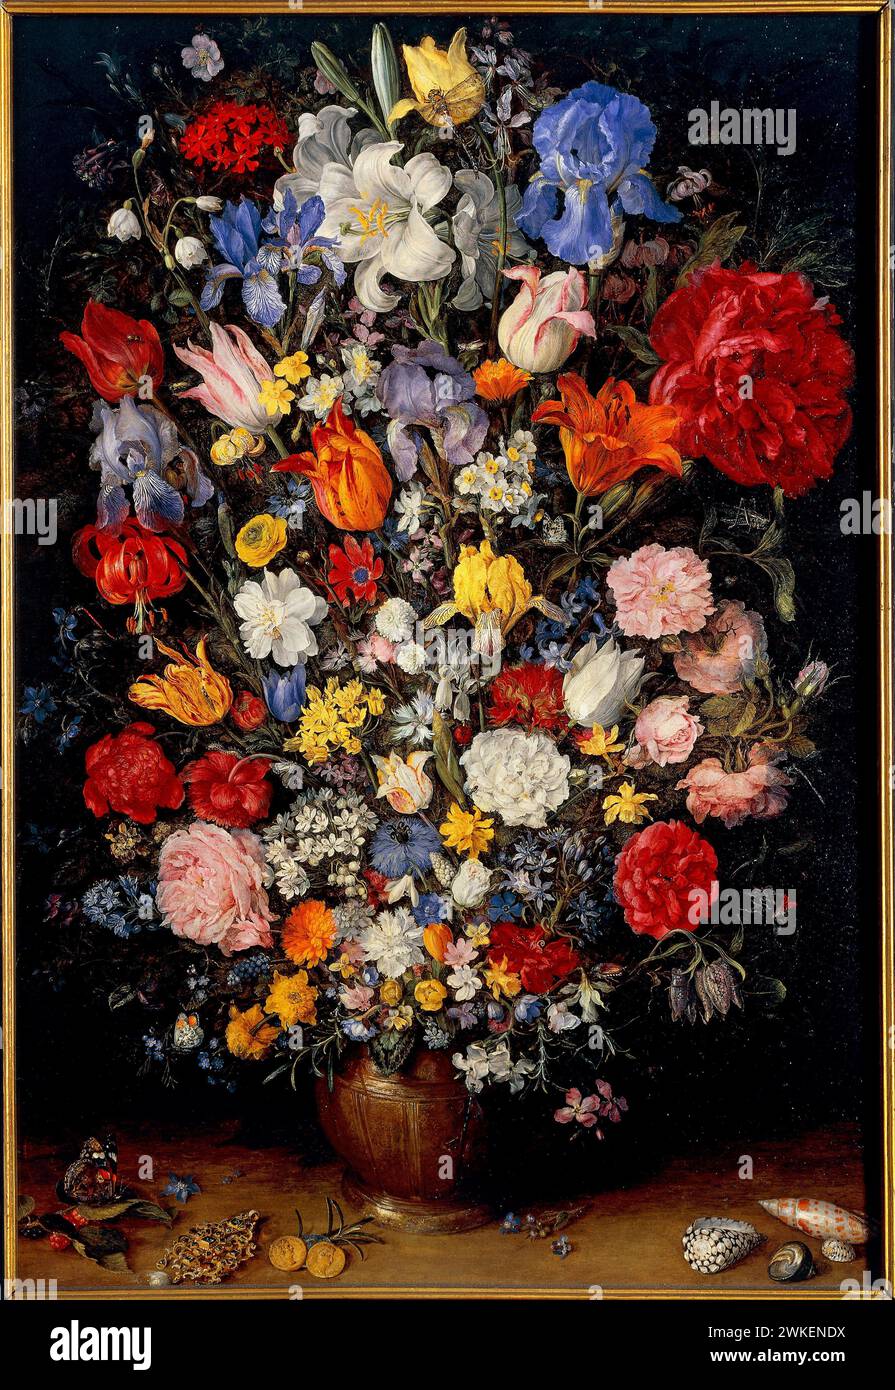 Blumenstrauss mit Juwelen, Münzen und Muscheln. Museum: Pinacoteca Ambrosiana, Mailand. Author: JAN Brueghel der Jüngere. Stock Photo